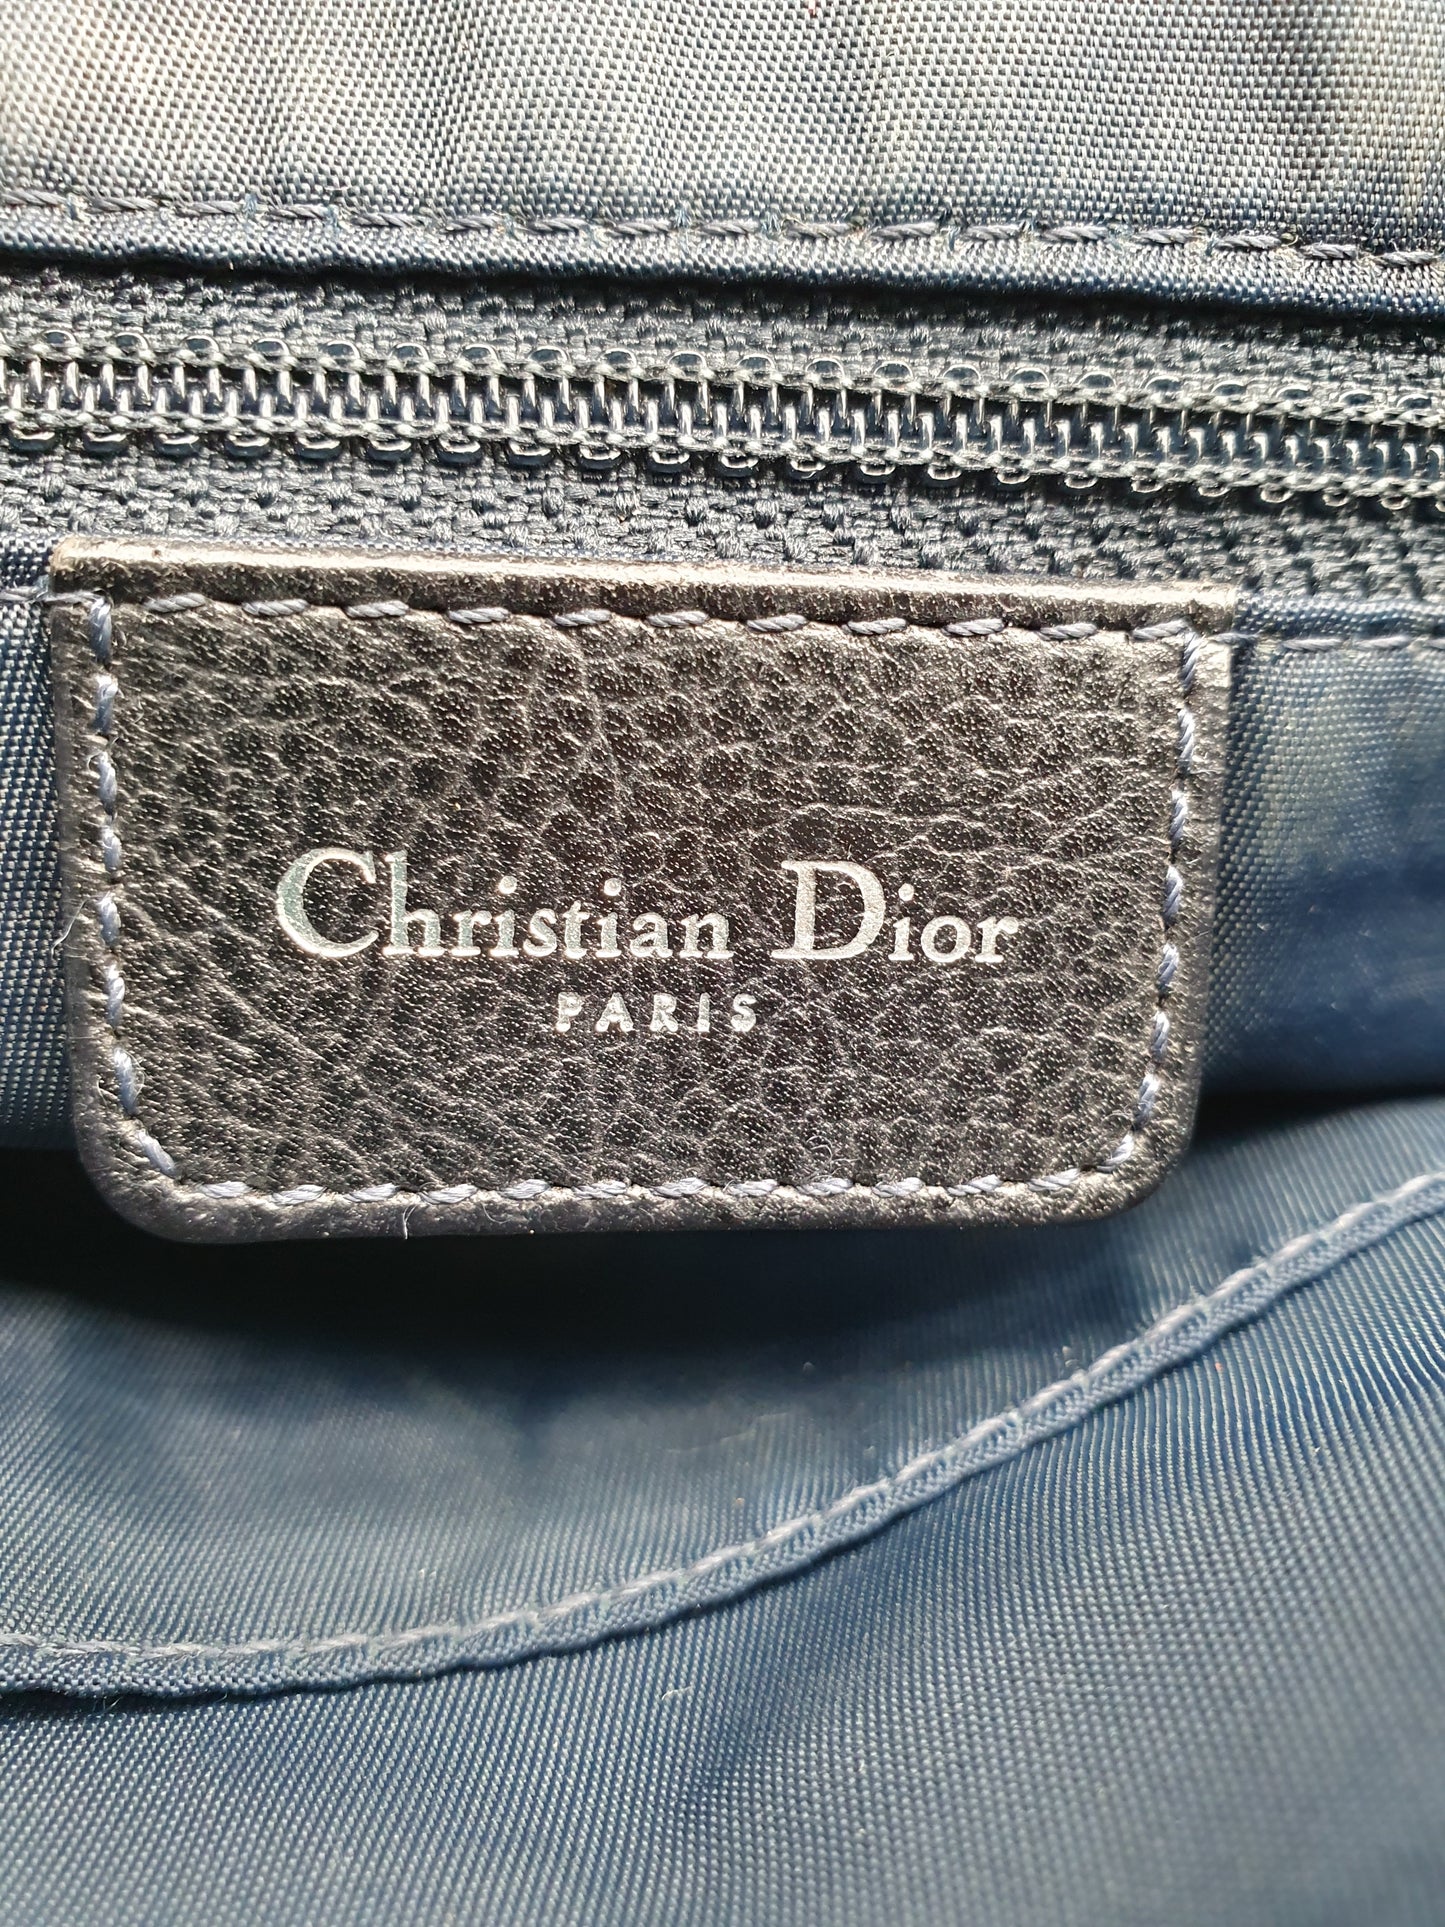 Dior Flight bag